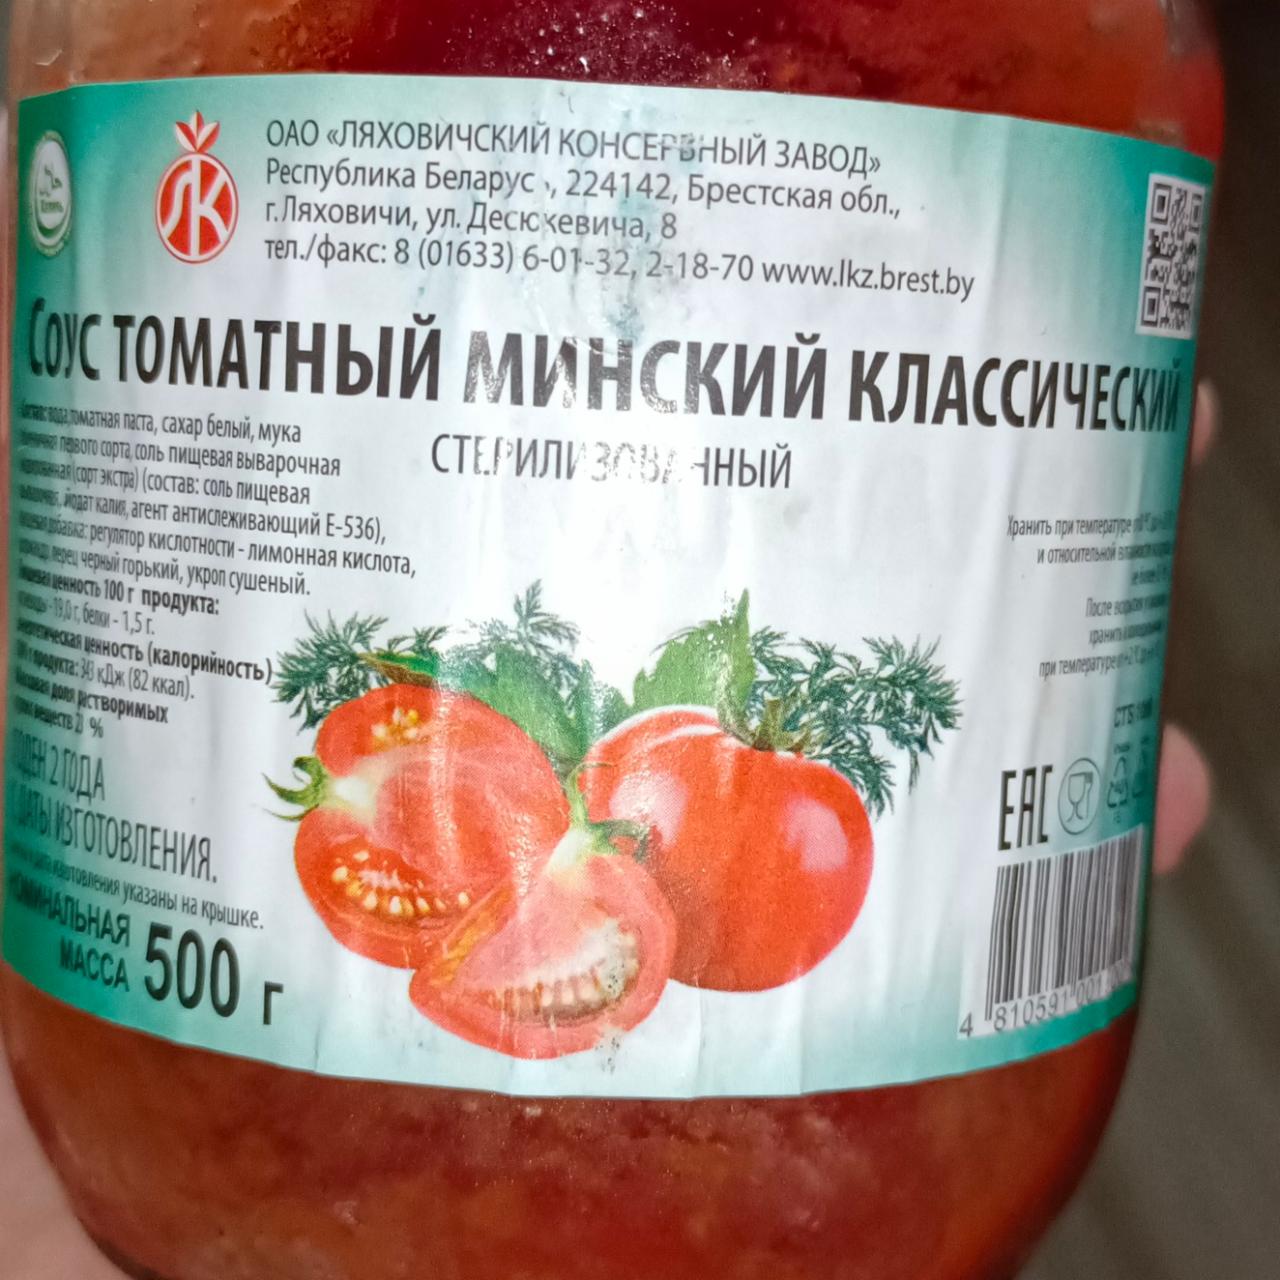 Фото - Соус томатный Минский классический Ляховичский консервный завод